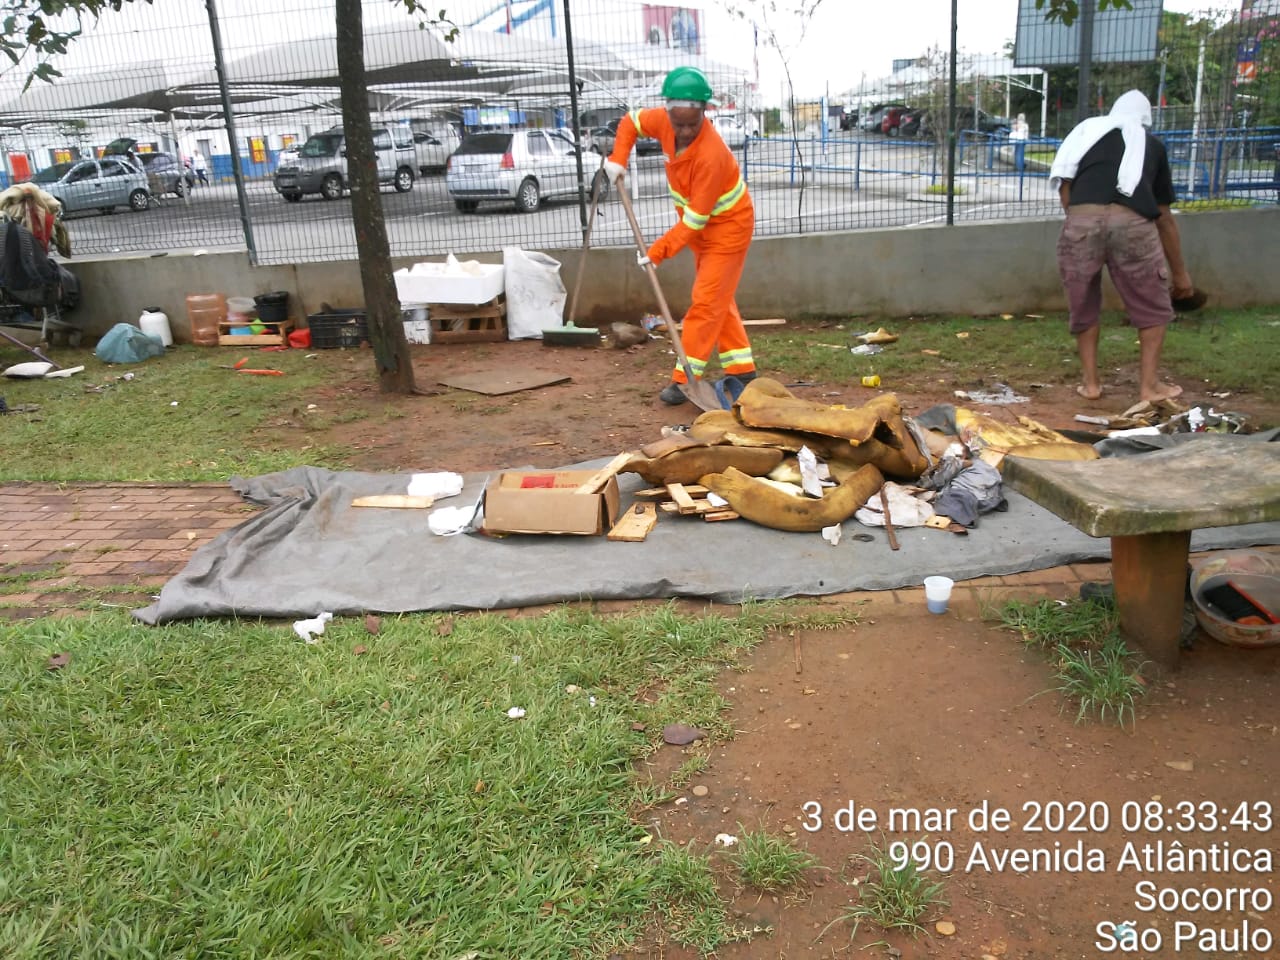 #PraCegoVer - Trabalhador da Subprefeitura varre e recolhe material deixado por moradores de rua. Há um alambrado ao fundo.